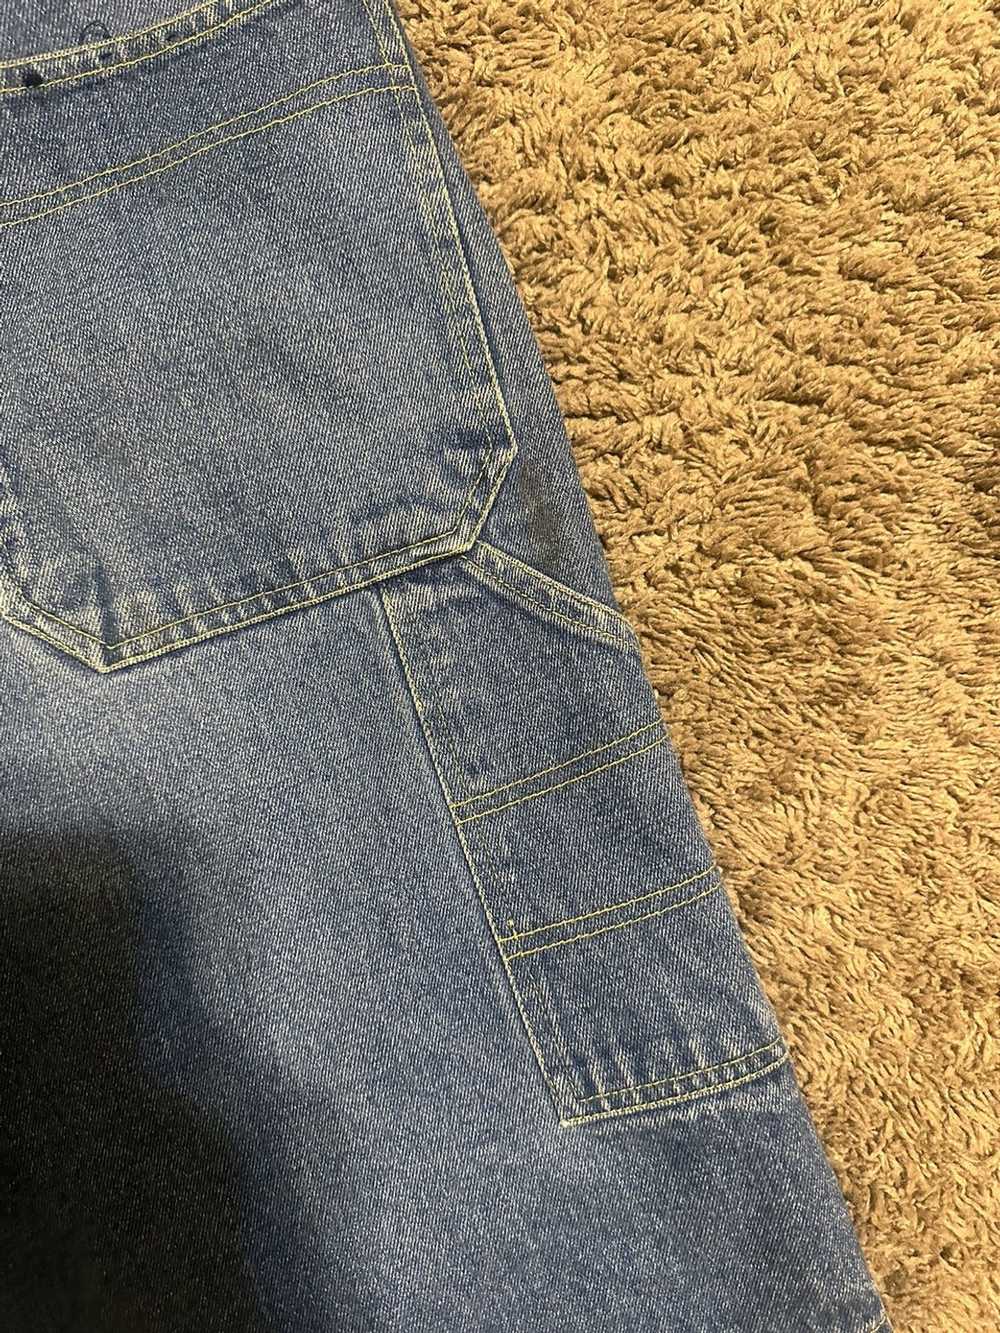 Jnco × Streetwear × Vintage Vintage Jnco jeans “V… - image 3